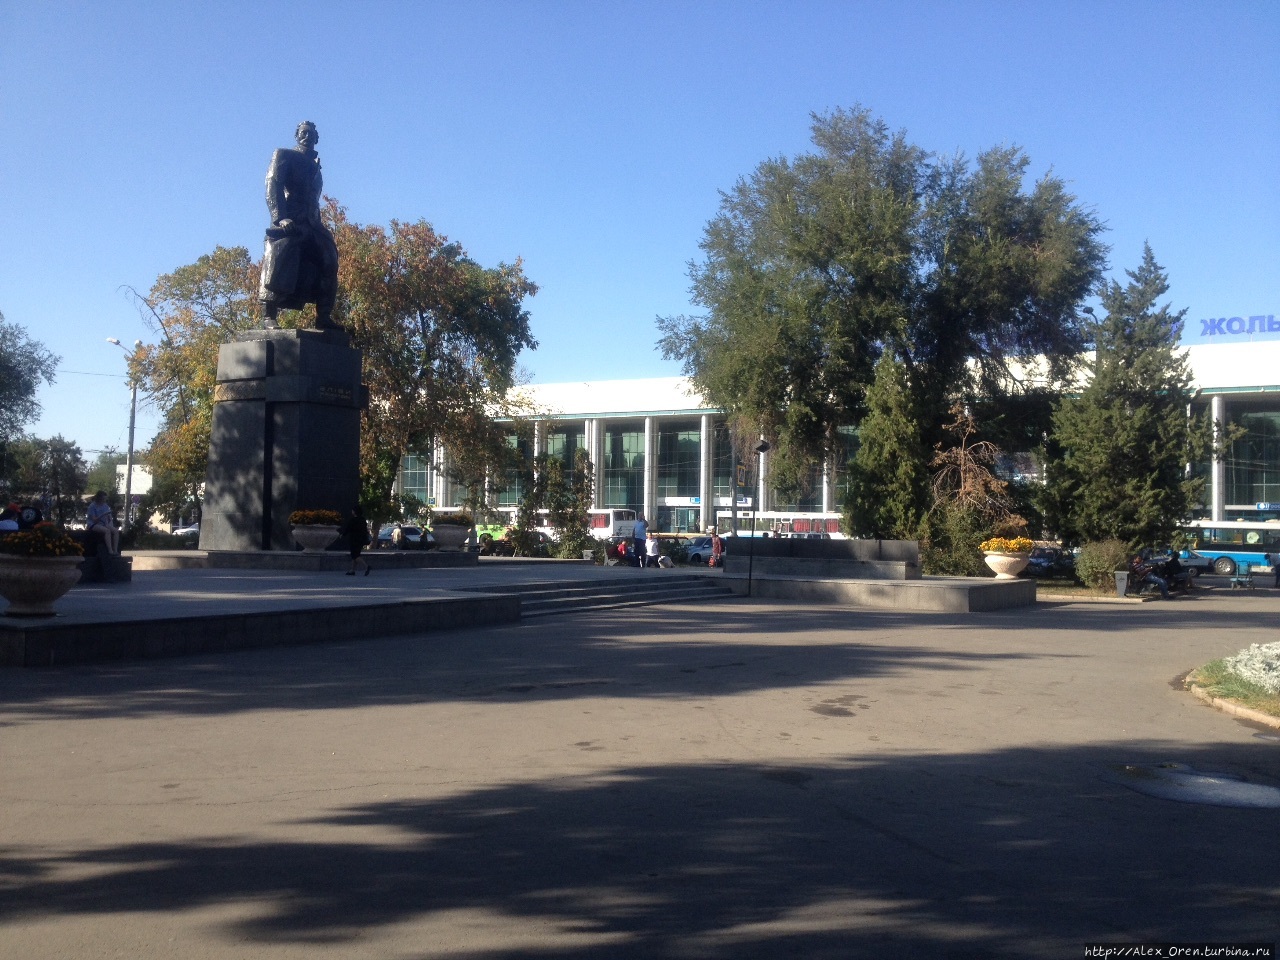 На площади перед вокзалом Алма-Ата I памятник Джангильдину, установлен в 1975 году.  
Джангильдин — партийный функционер работал в 1920-е годы в Оренбурге, когда Оренбург был столицей Казахской АССР Алматы, Казахстан